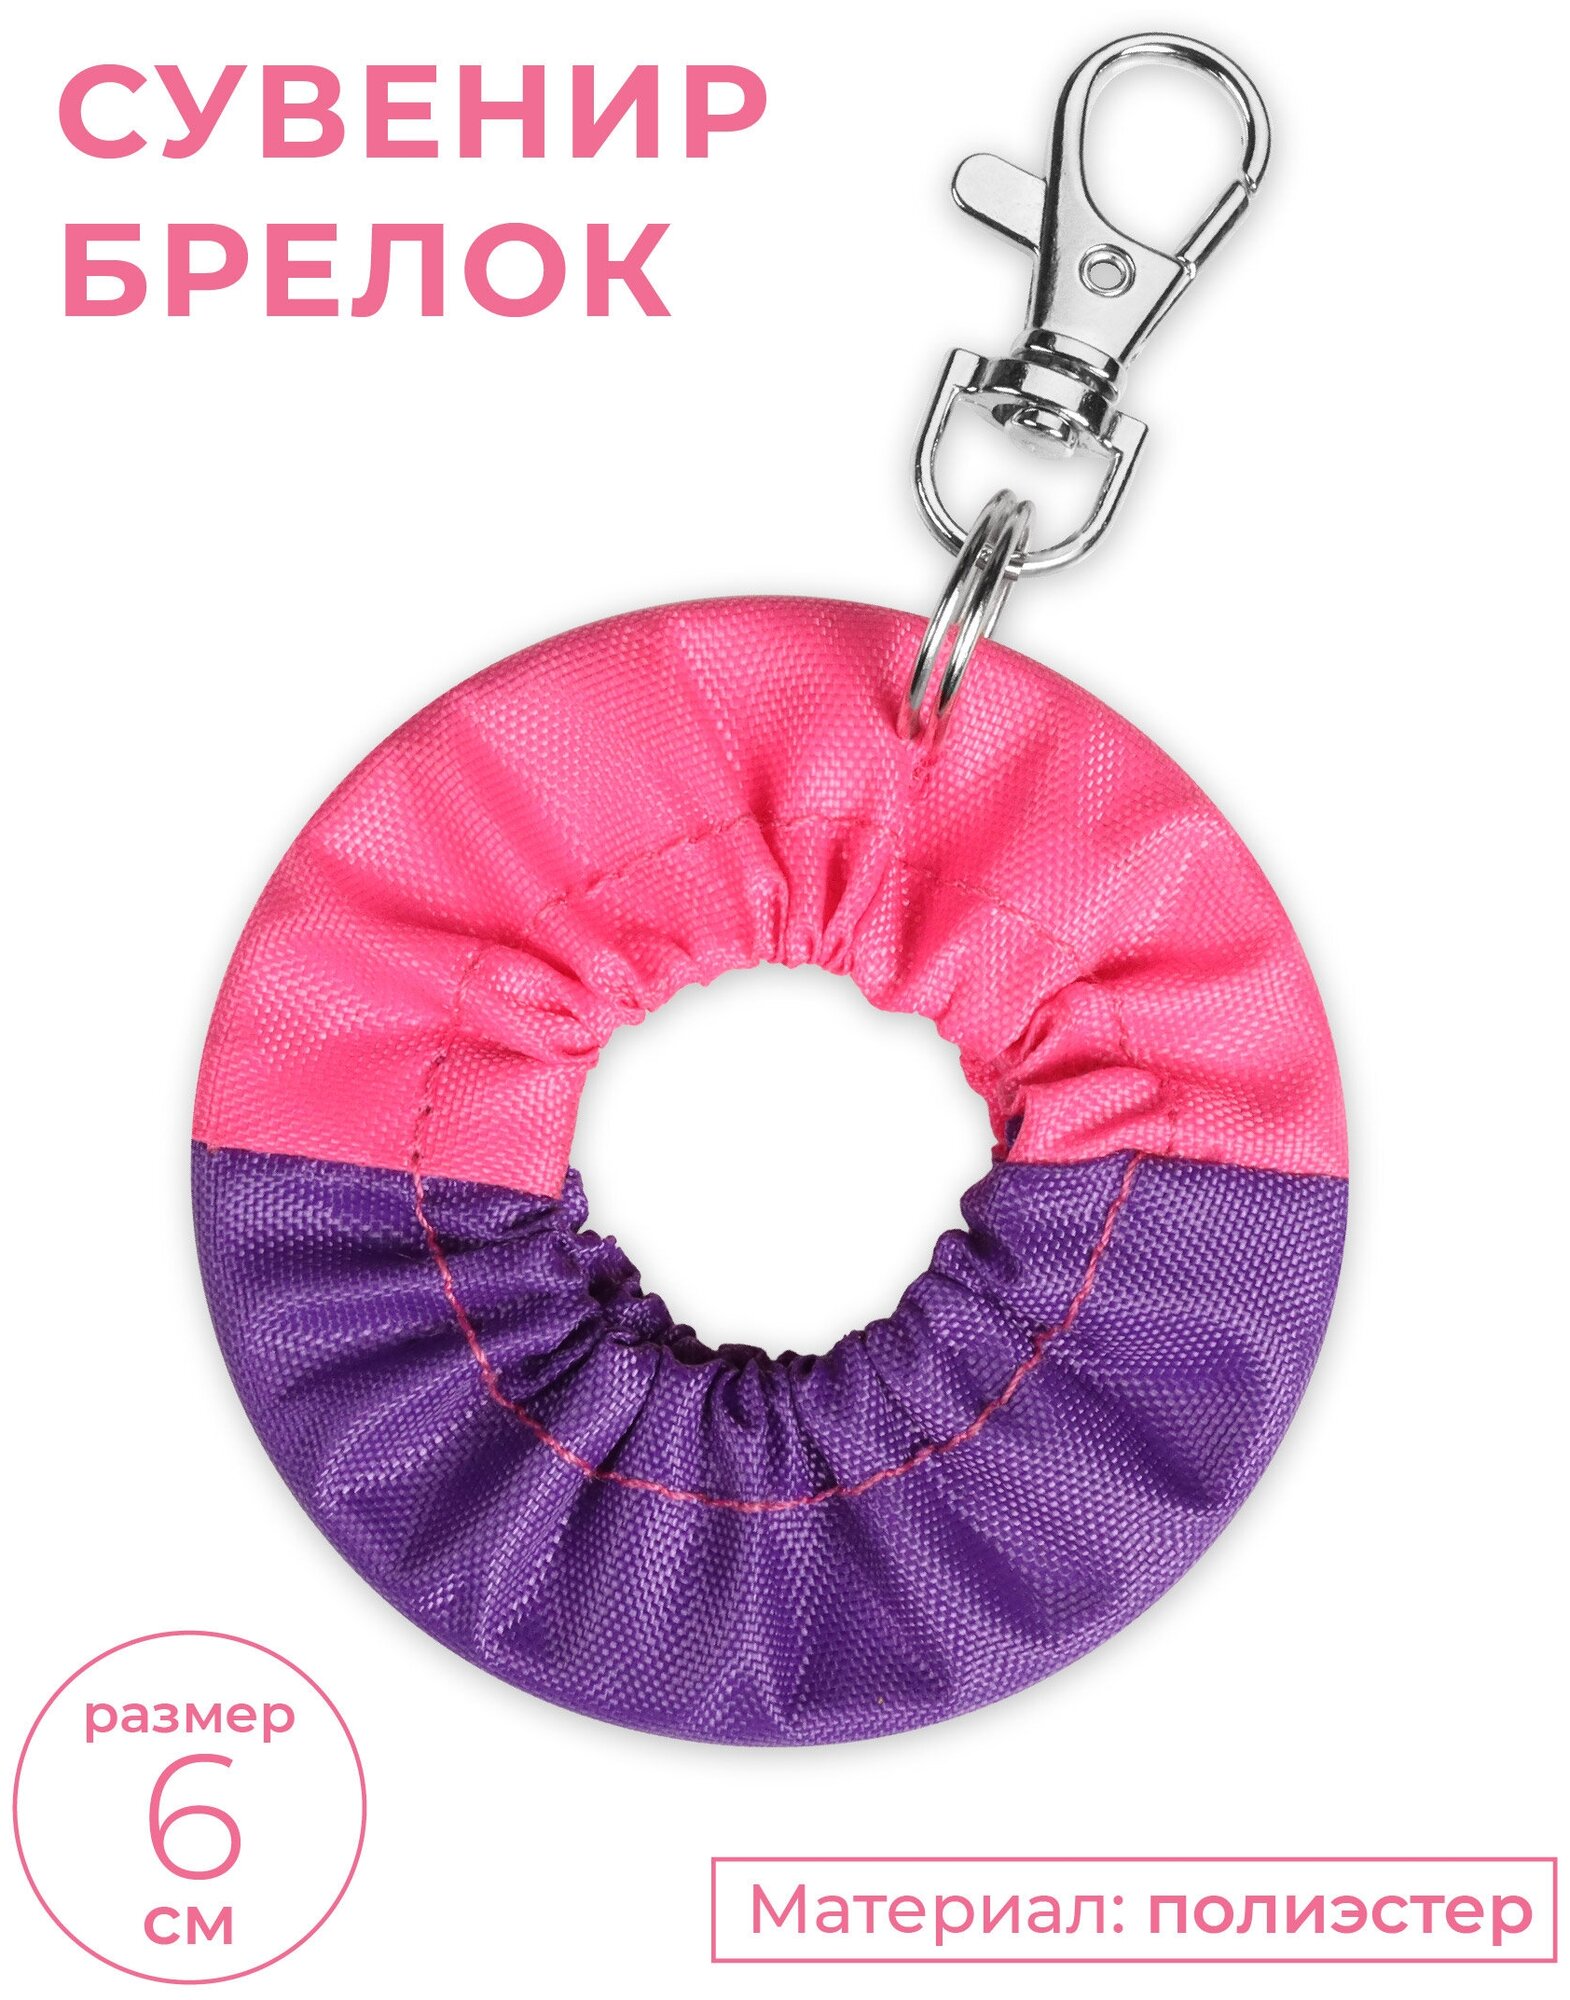 Сувенир брелок чехол для обруча INDIGO, Фиолетово-розовый, 6 см